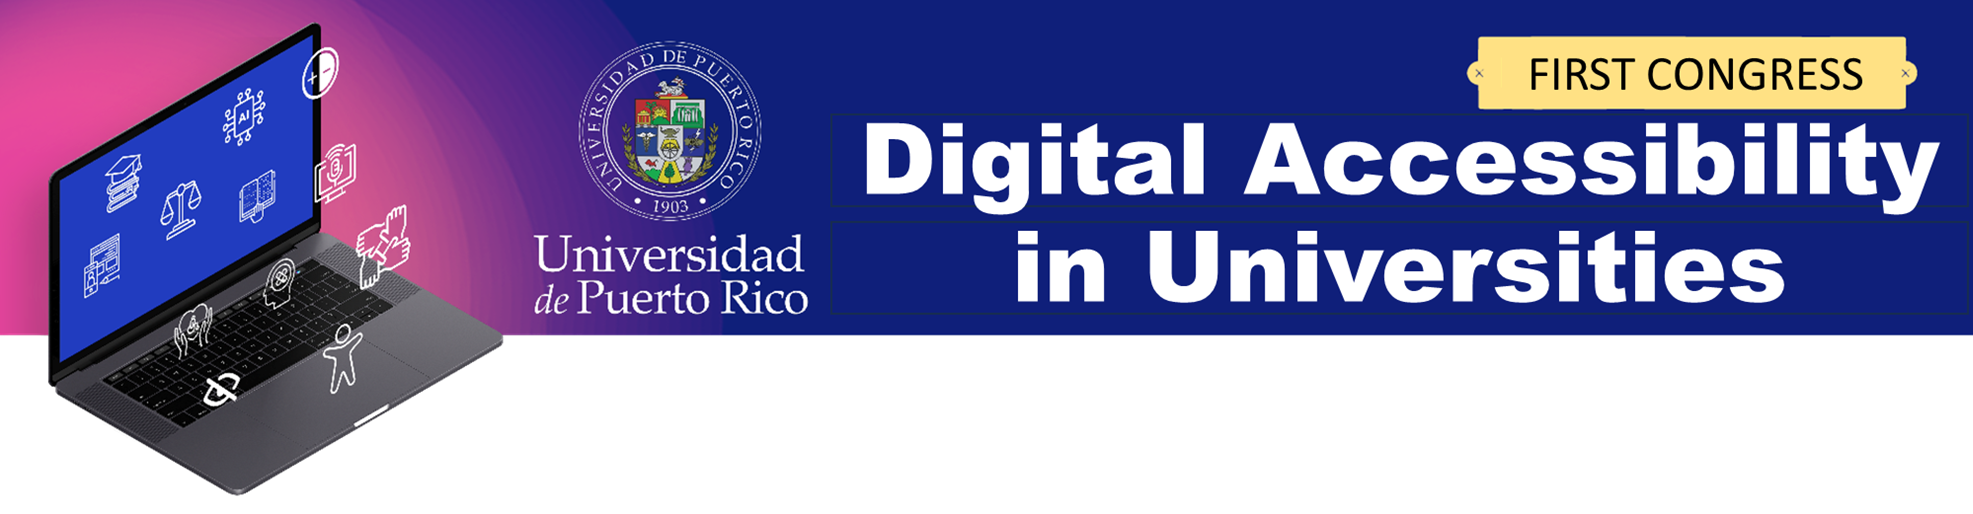 Imagen que usado como Banner con el título: Primer Congreso Accesibilidad Digital en Universidades. Contiene una computadora portátil abierta con varios iconos flotando, representando: educación, inteligencia artificial, contraste, ayuda auditiva, igualdad, unión, entre otros. Incluído en el banner tambien está el logo de La Universidad de Puerto Rico.